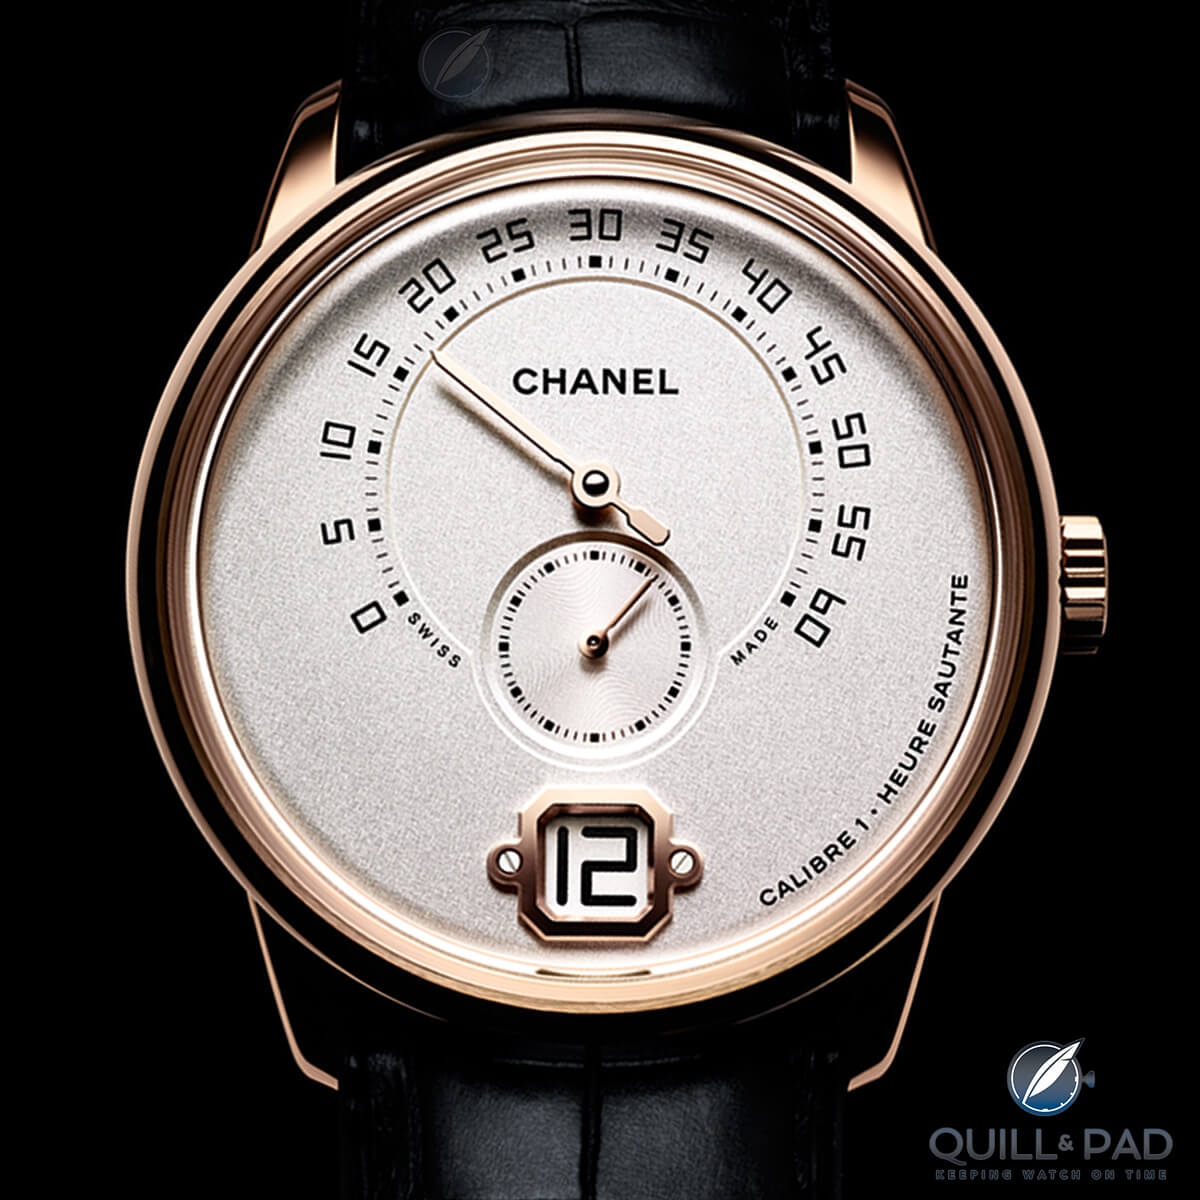 Monsieur de Chanel in pink gold